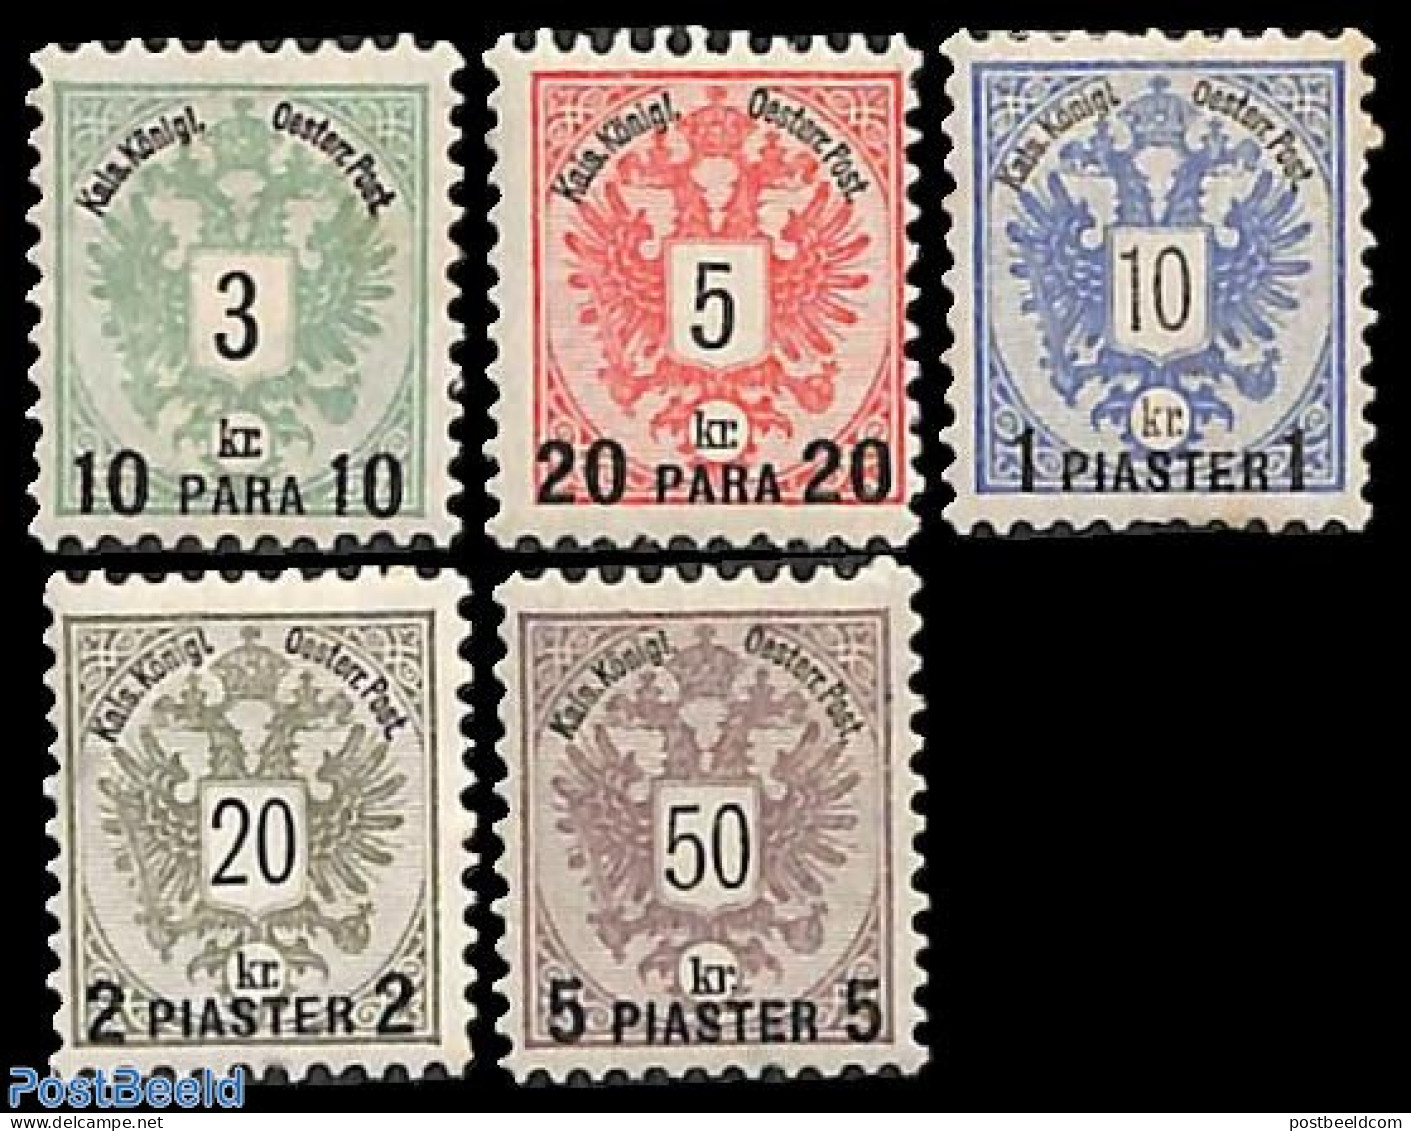 Austria 1888 Levant Post 5v, Unused (hinged) - Unused Stamps